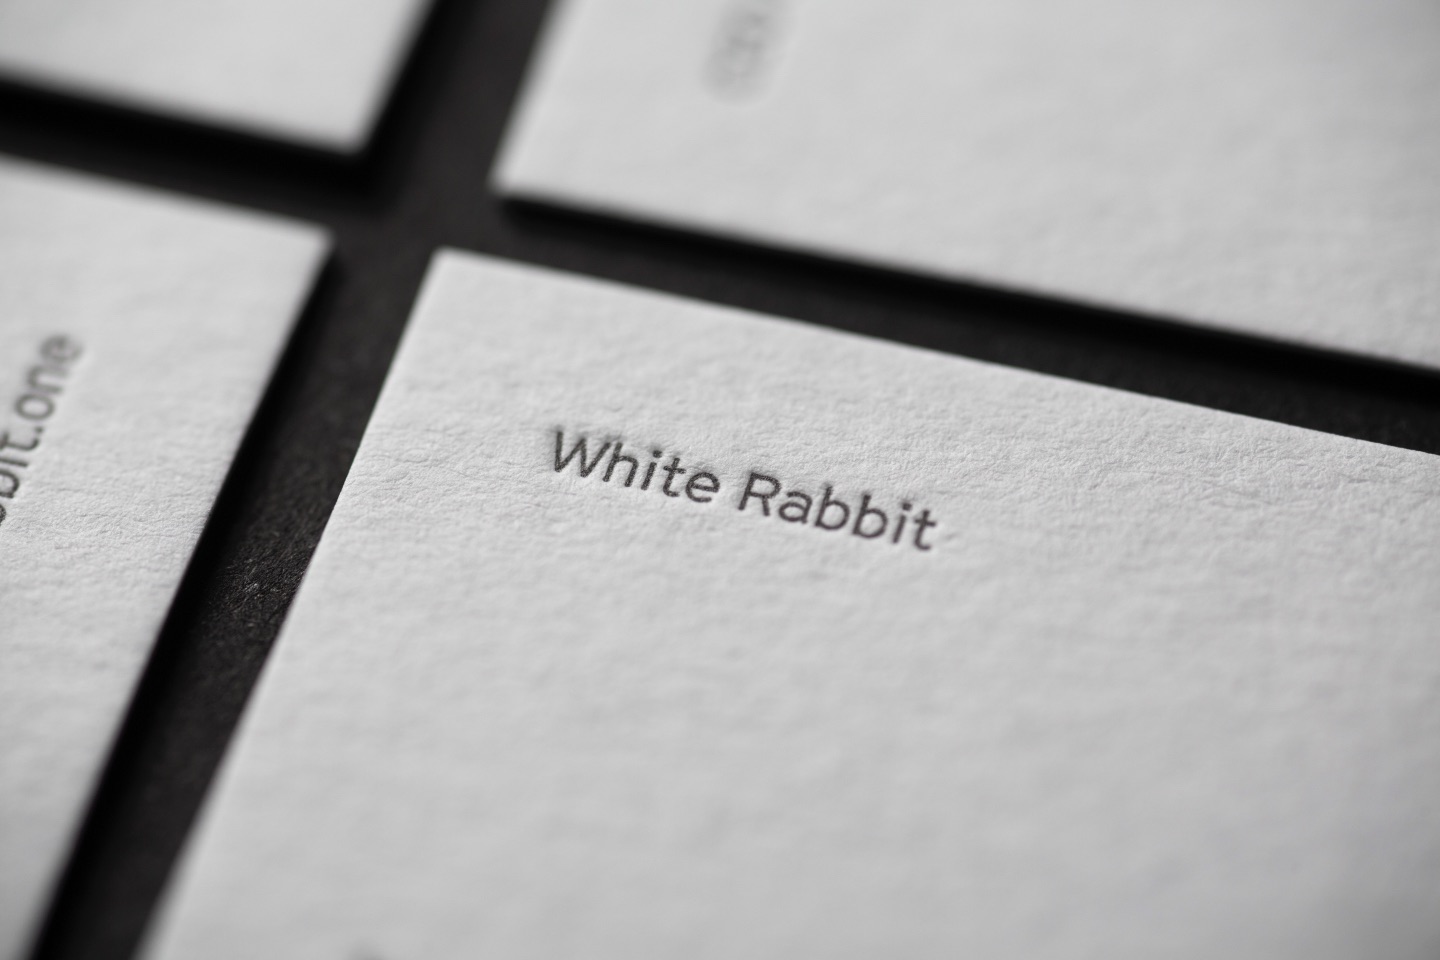 White Rabbit Brand Design Creation by Kind